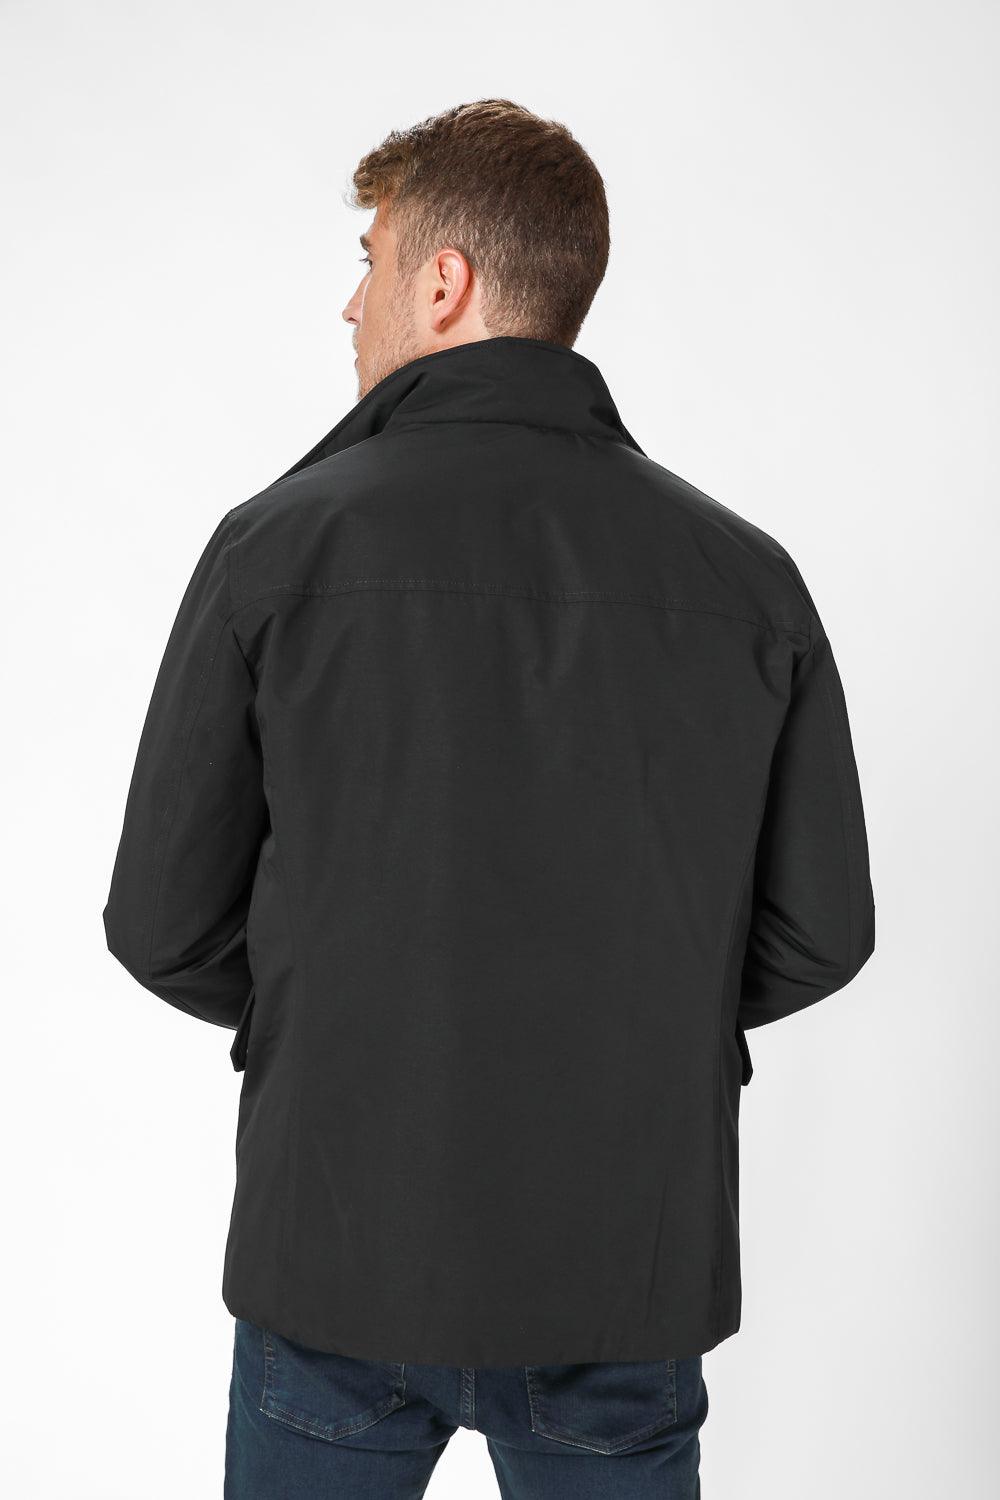 KENNETH COLE - מעיל מרופד בצבע שחור - MASHBIR//365